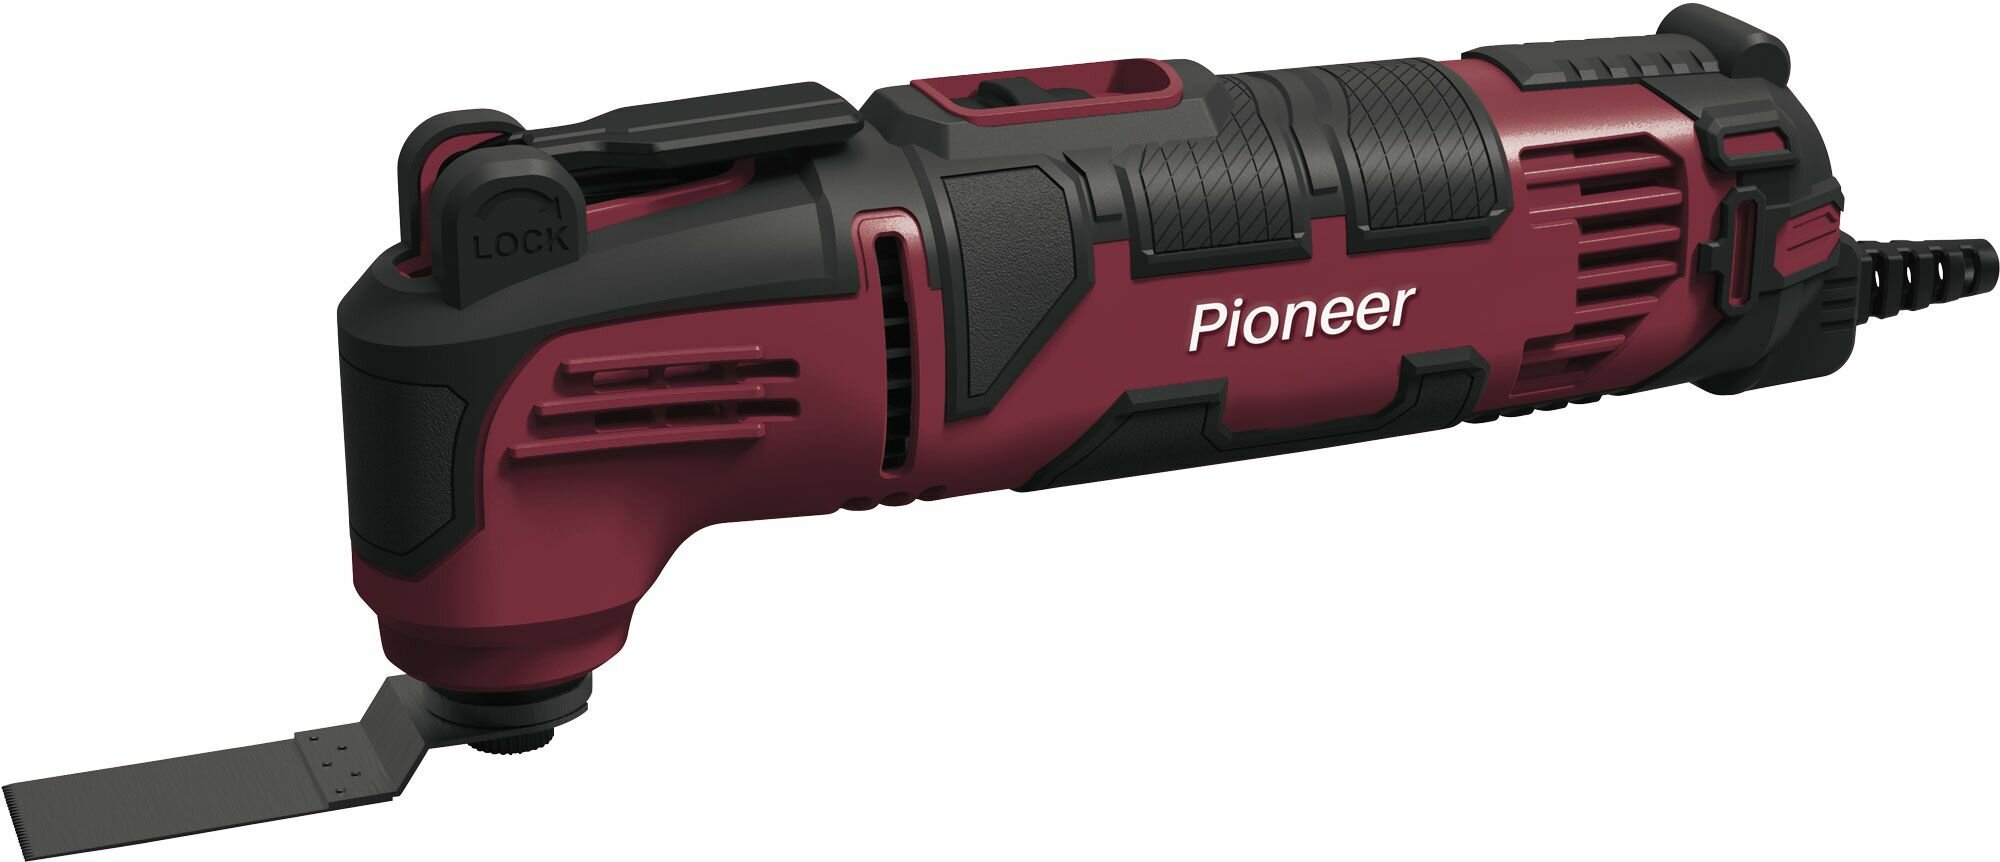 Многофункциональный инструмент реноватор Pioneer EMT-M350-01C рукоятка Anti-Slip 6 скоростей быстрая замена ножей 350 Вт